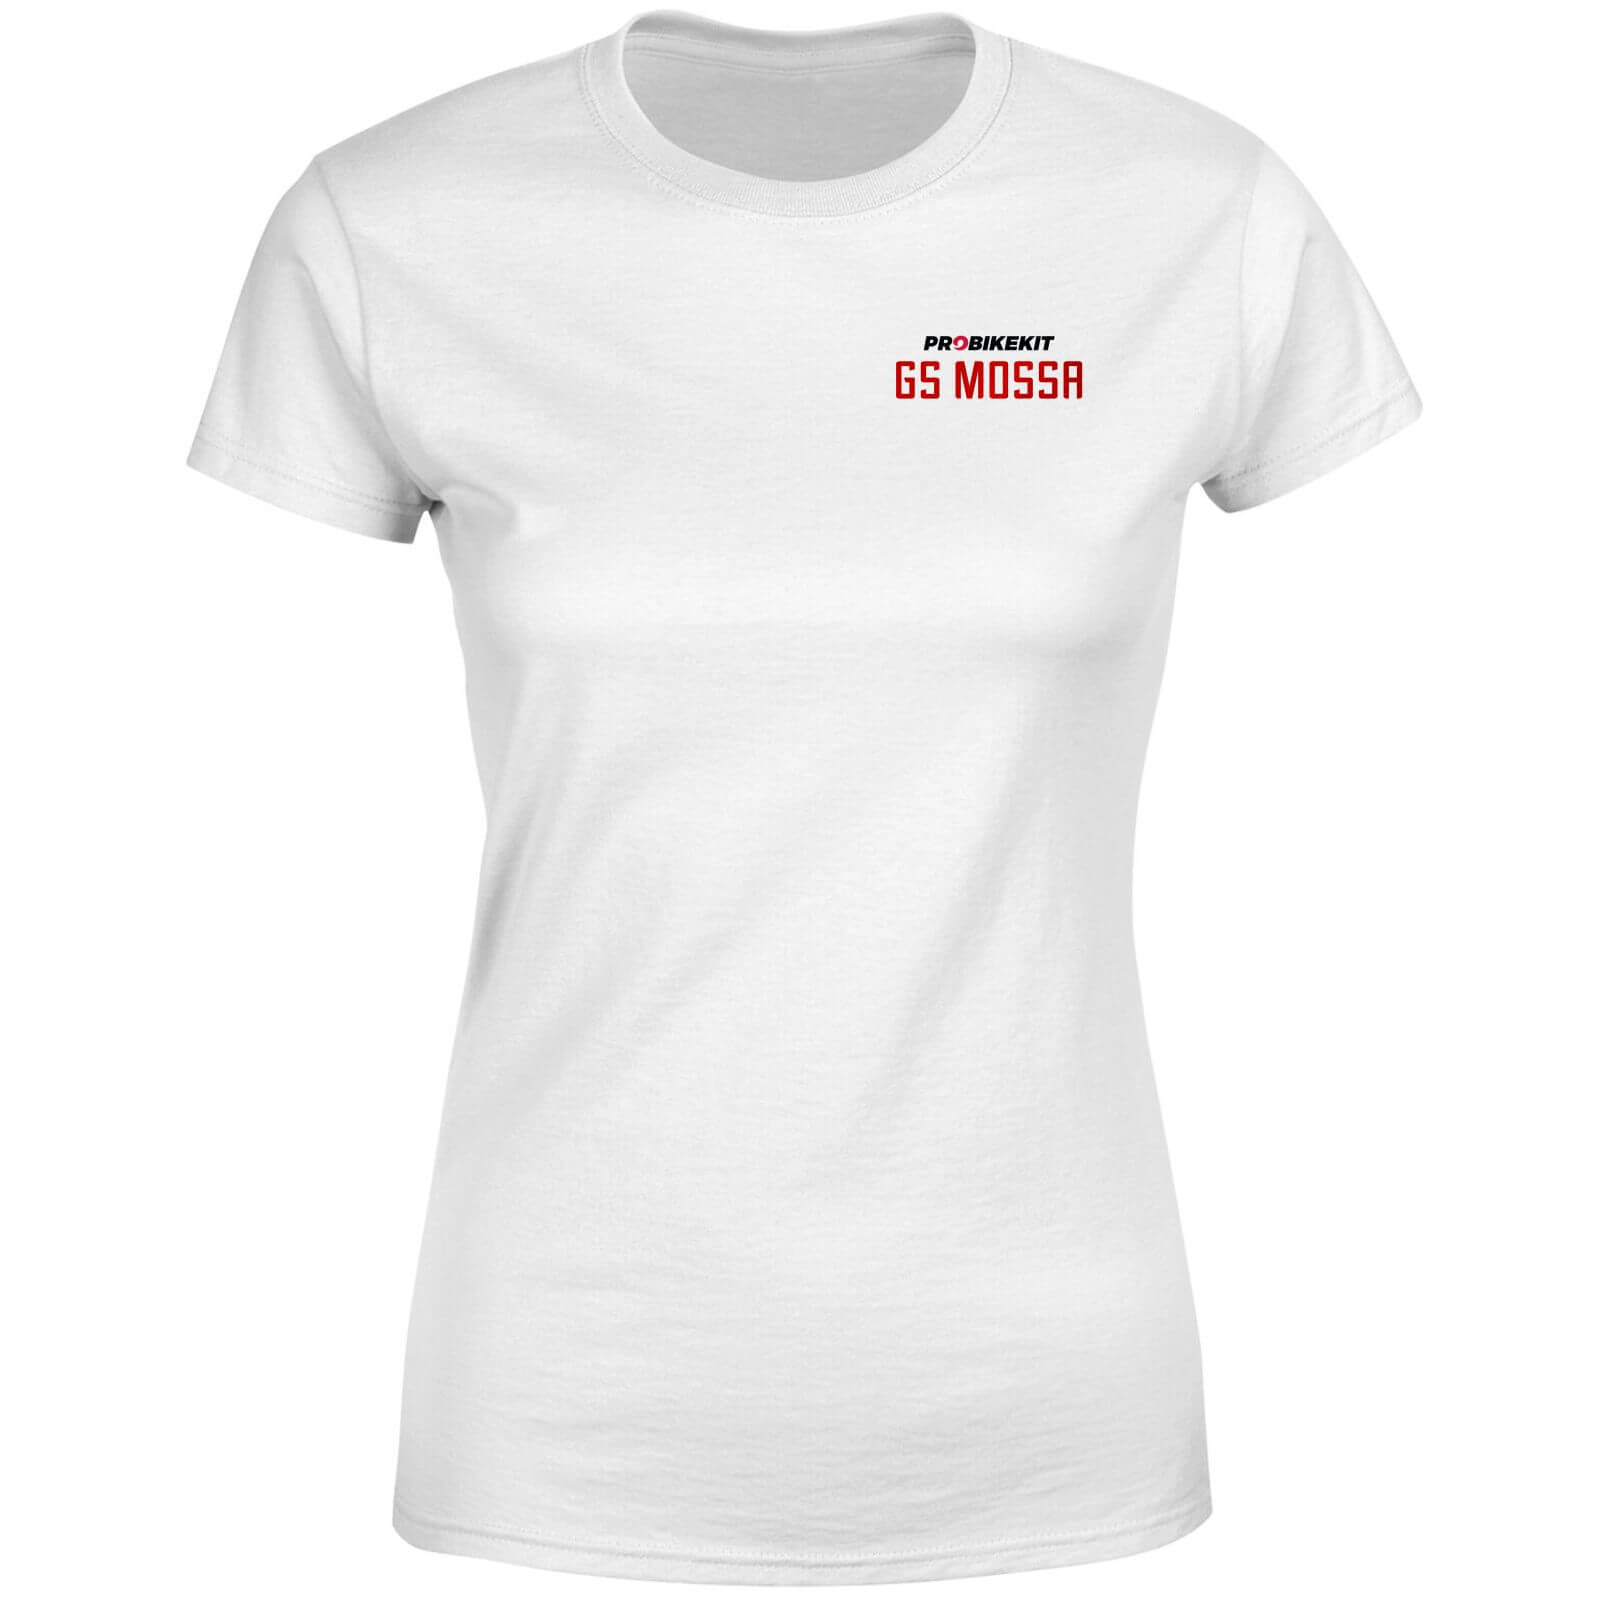 PBK GS Mossa Pocket Print Open Chest Logo Women's T-Shirt - White - M - White